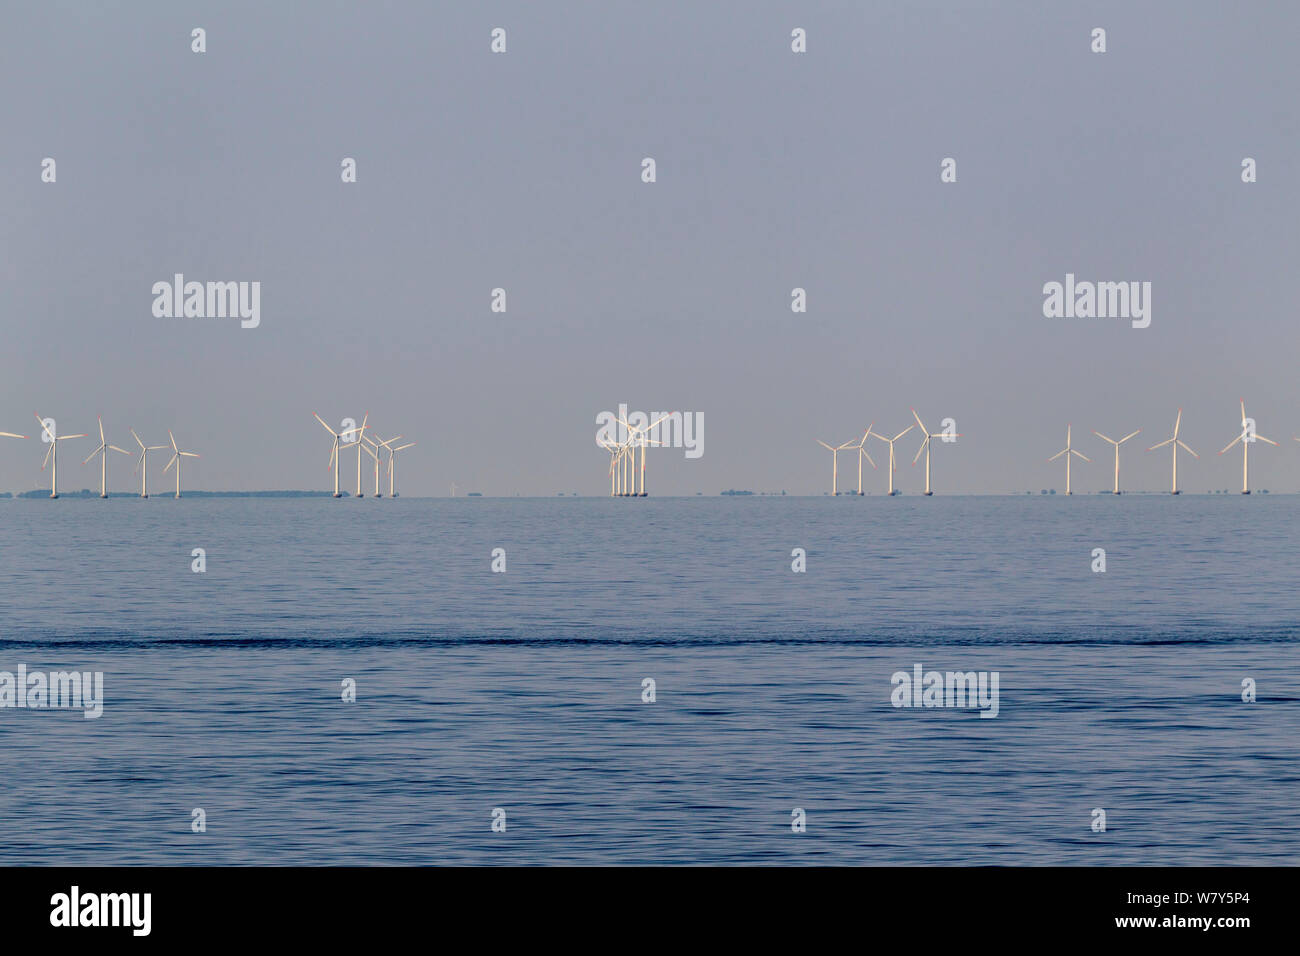 Wind turbines in a off shore wind farm. Mecklenburg Bight, Baltic Sea. June. Stock Photo